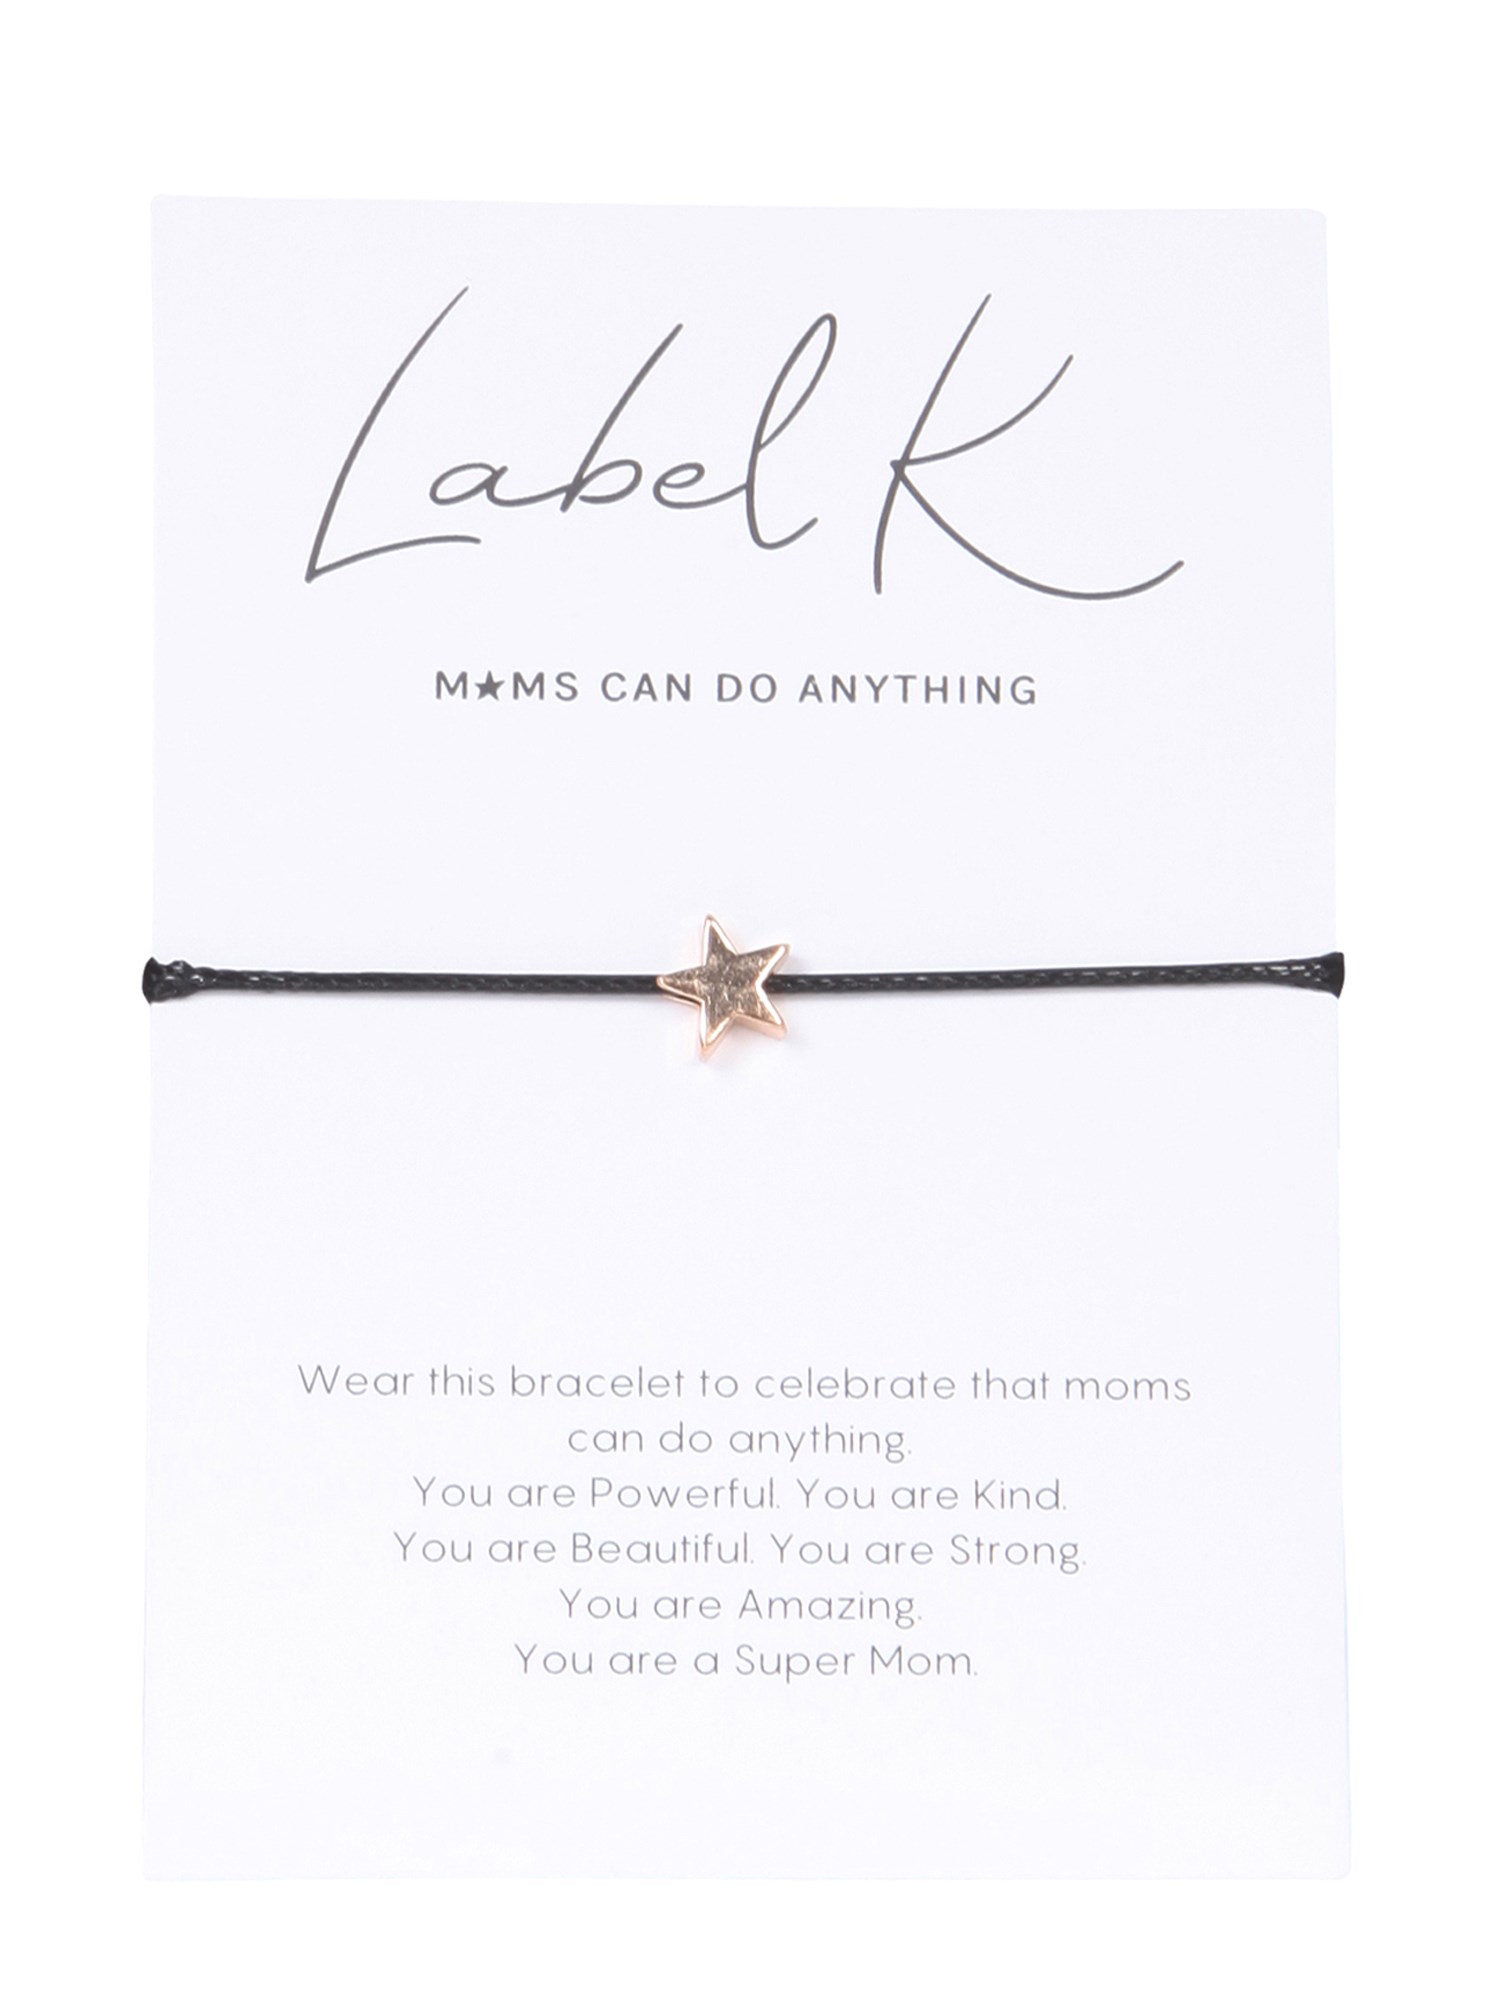 label k bracelet with charm